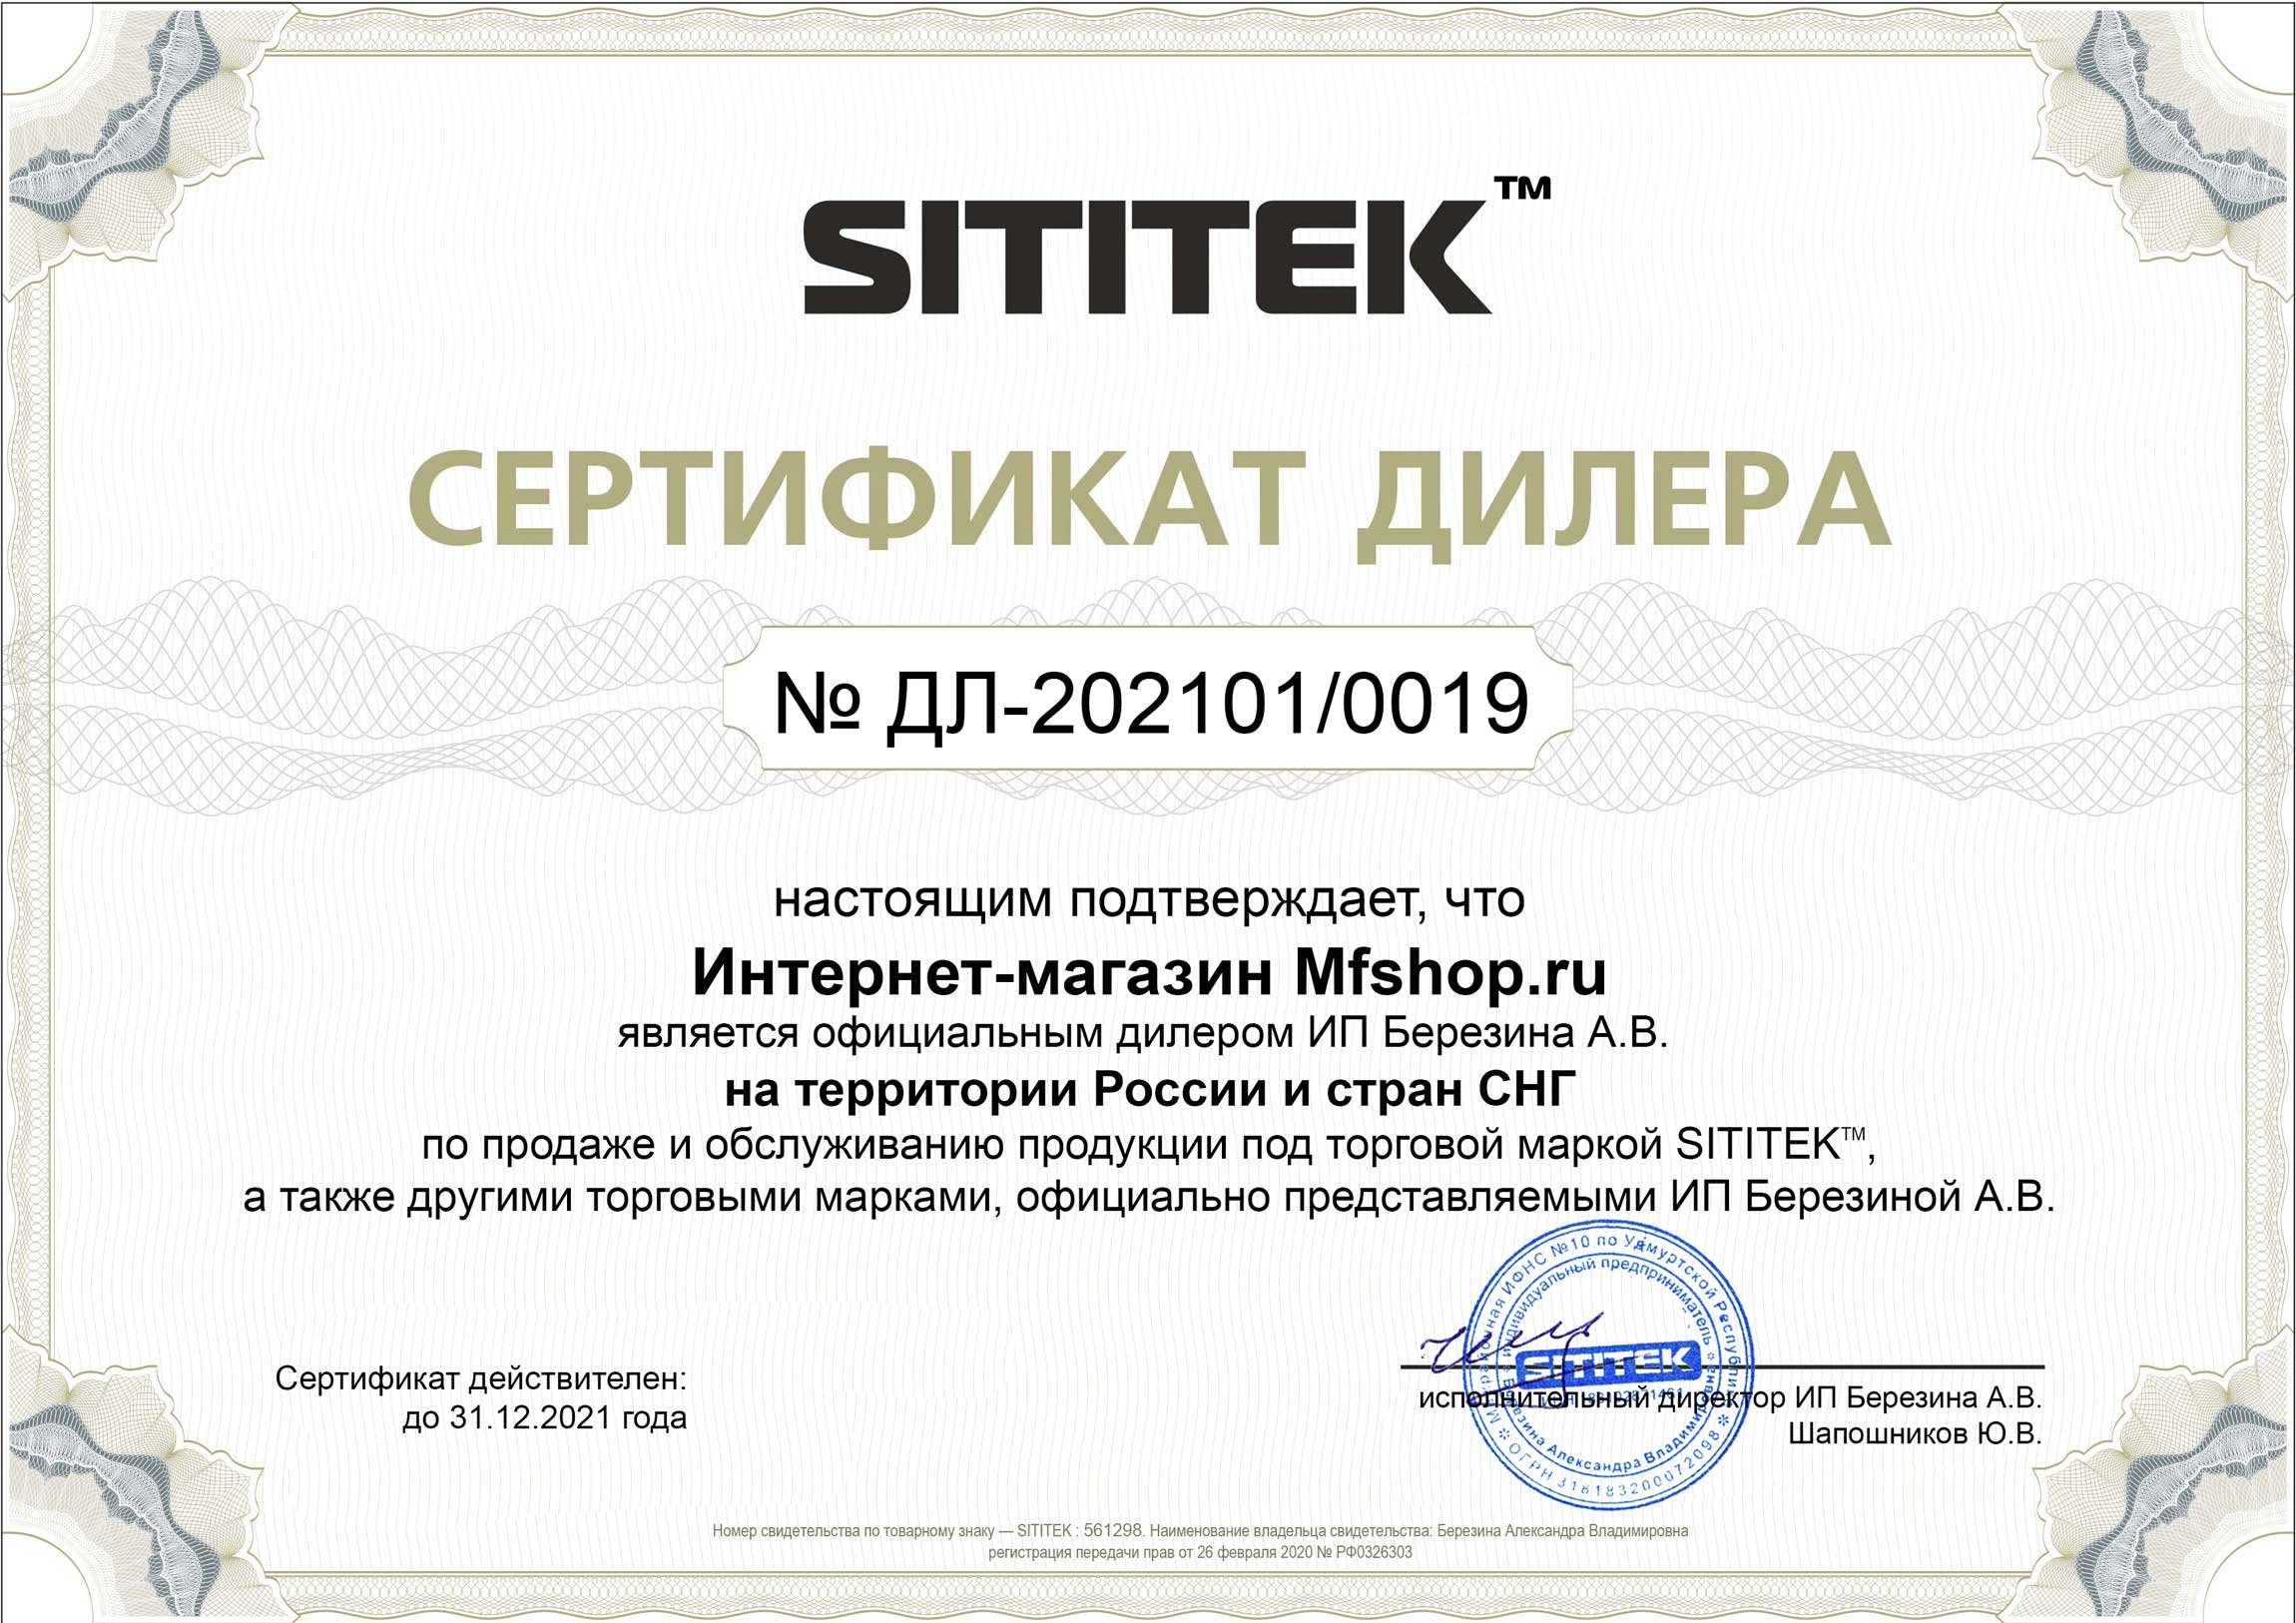 Сертификат дилера на право реализации продукции компании 